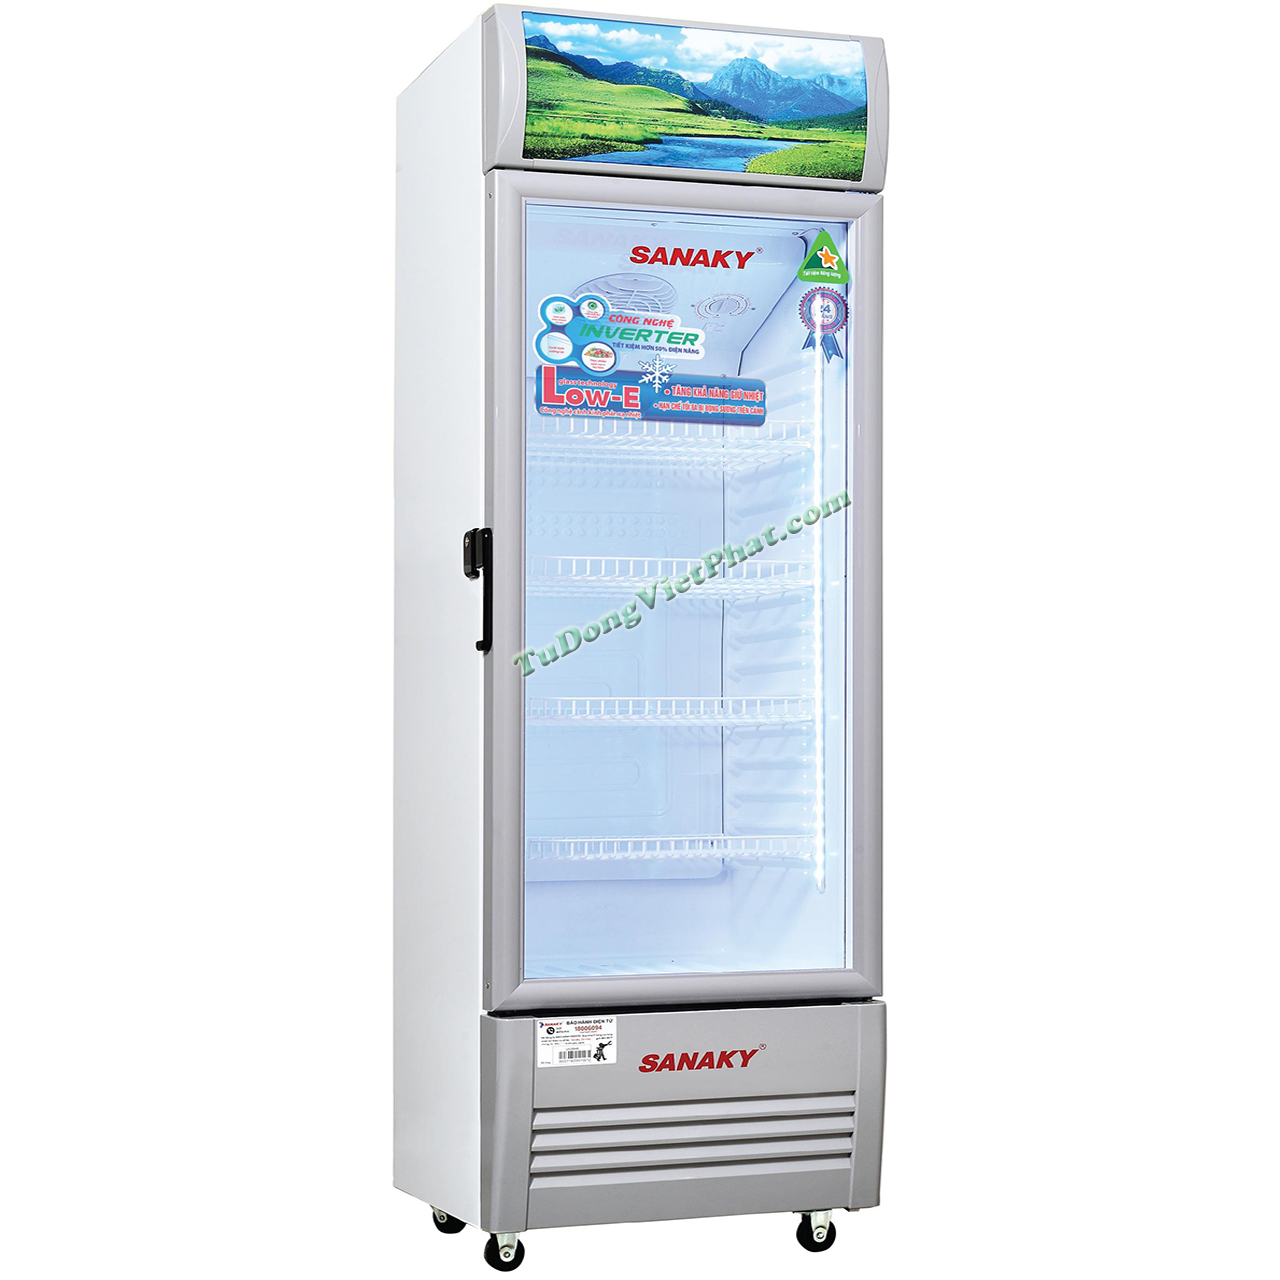 Tủ mát Sanaky Inverter VH-218K3L( 1 ngăn 1 cửa, 210 lít) - Bảo hành chính hãng  - Voucher 10% lên đến 800K